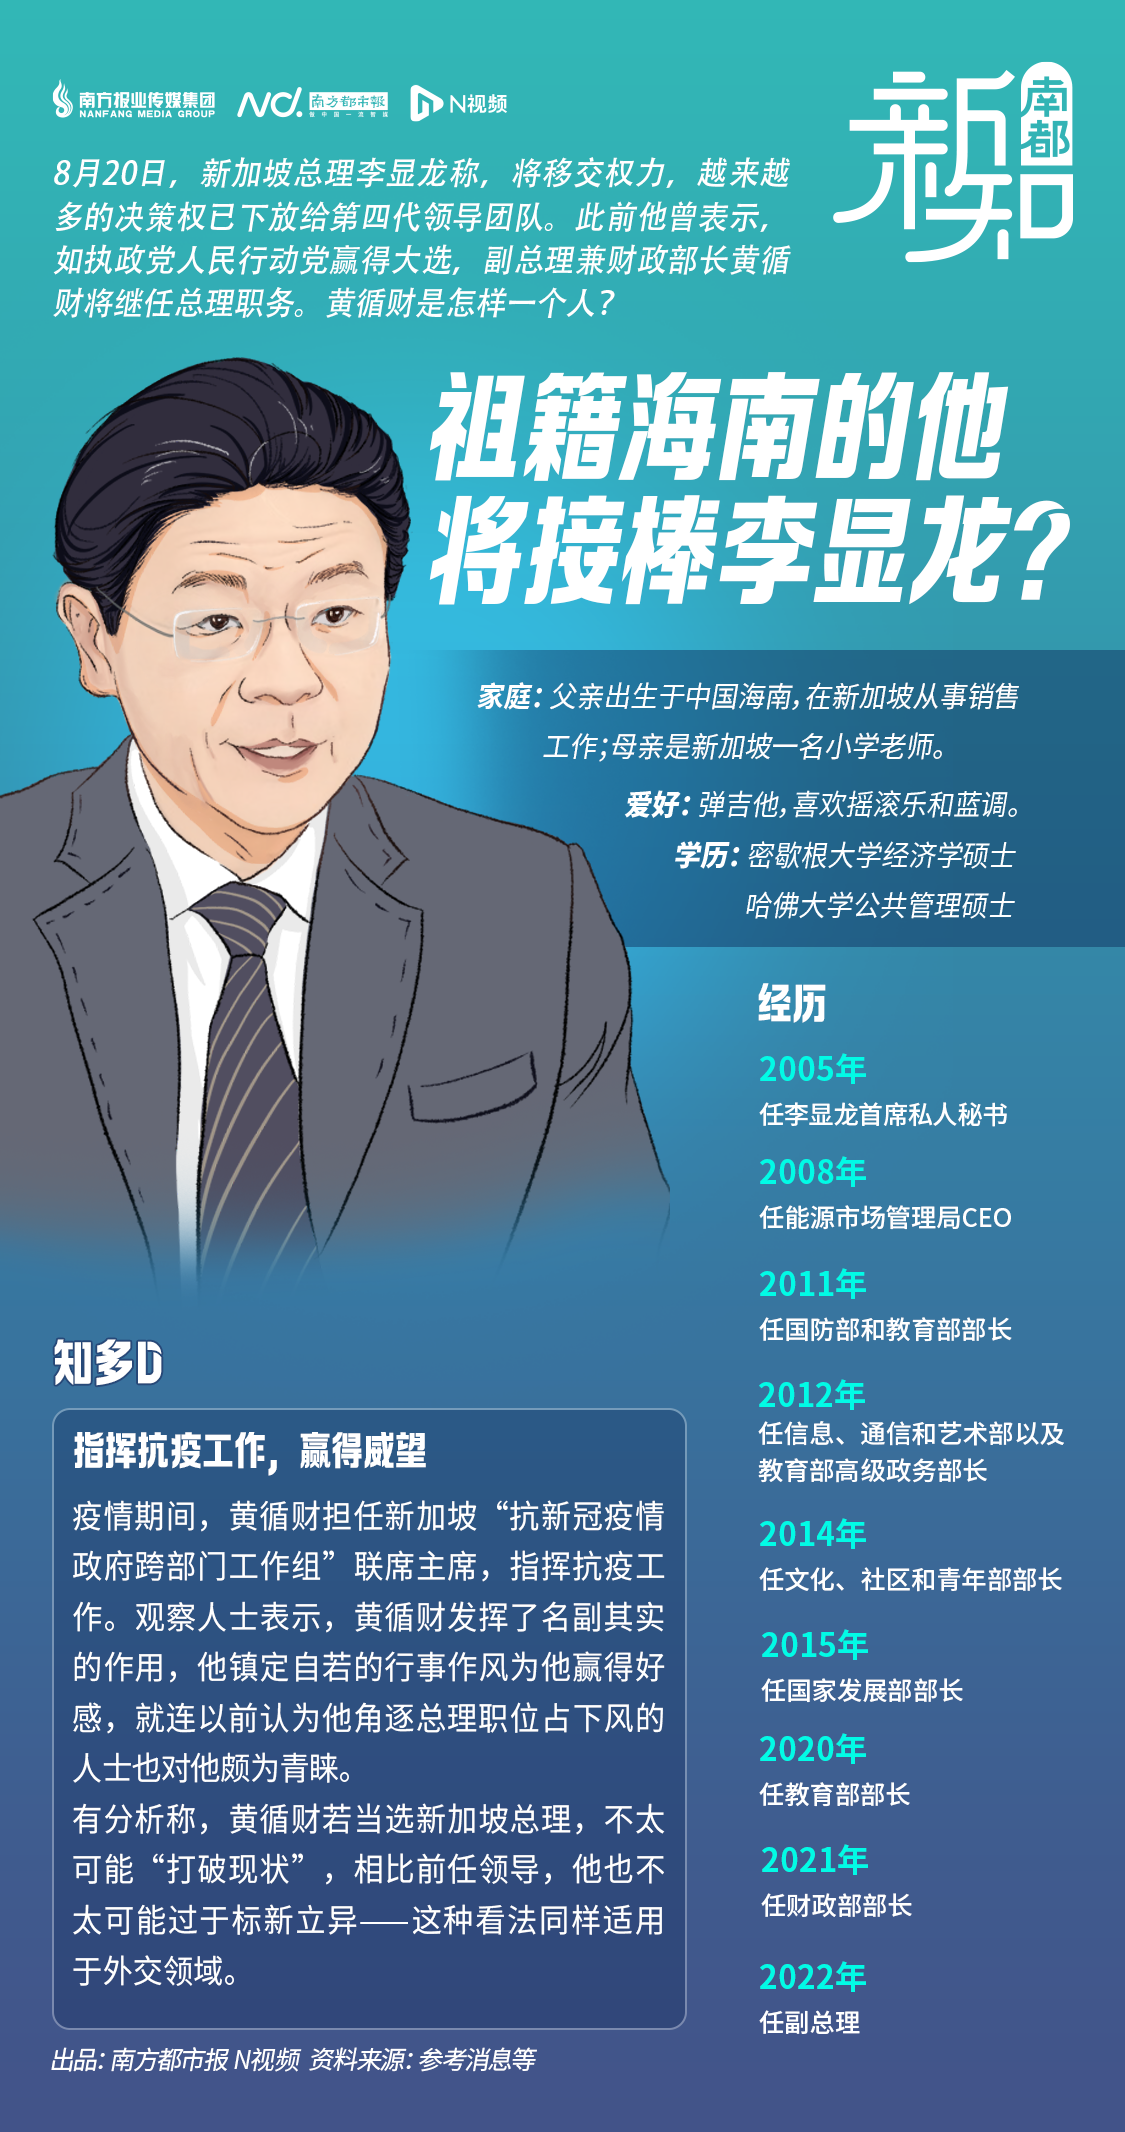 祖籍中国海南的他将接棒李显龙任新加坡总理？为何是他？